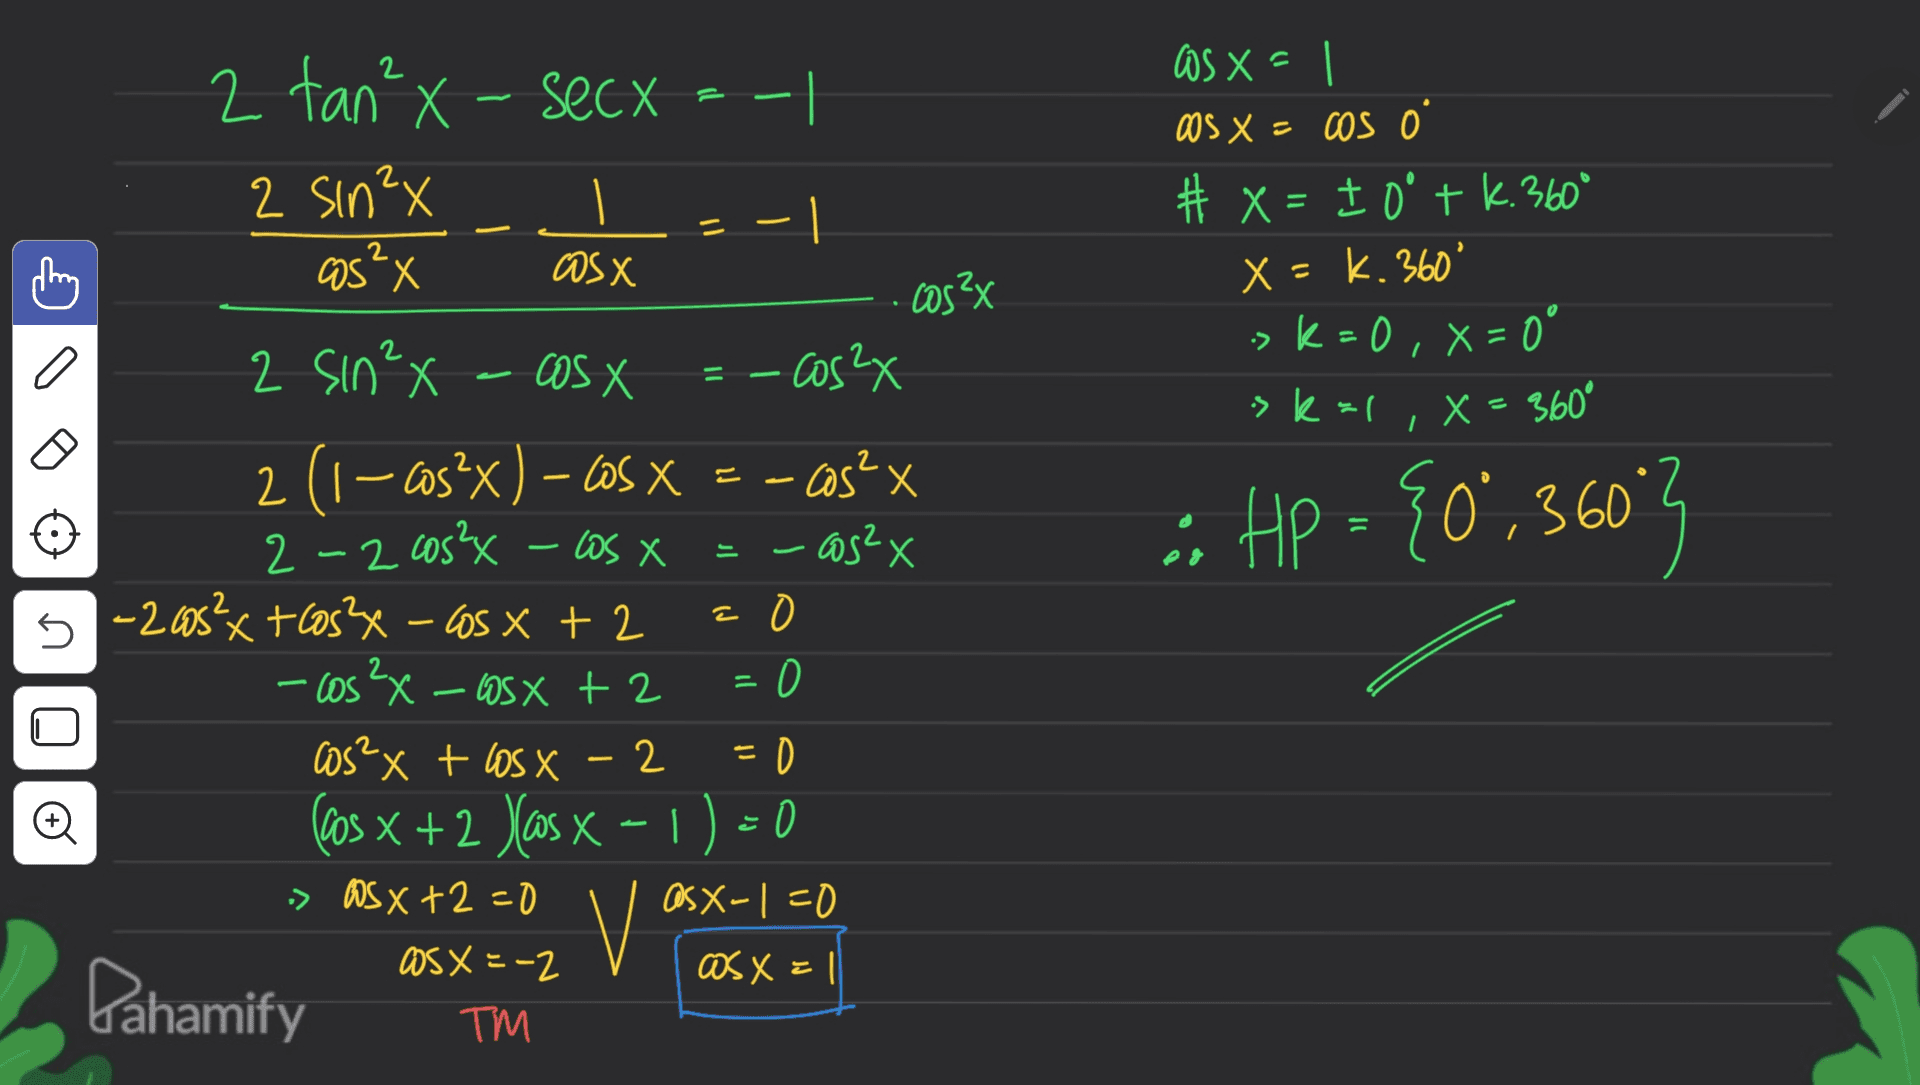 2 tan²x - secx 2 Sin²x cos" X os x = as X = cos o # x = 1 0 + k. 360° x - k. 360° -> k = 0, x = 0 11 2 as X cos²x a skal X = 360° I si Hp = {0°,3603 HP 5 2 sin²x - cosx - cos2x 2 (1-cos?x) – COS X = - COS?x 2 -2 cos²x - Wsx - cos2x -205²x + cos2x - cos x + 2 a - cos2x - cosx + 2 = 0 cos²x + losx - 2 2 (cos x + 2 yas x - 1) = 0 X » OSX +2=0 as x-1=0 OS X = -2 asx=1 Dahamify ТМ Đ vo 